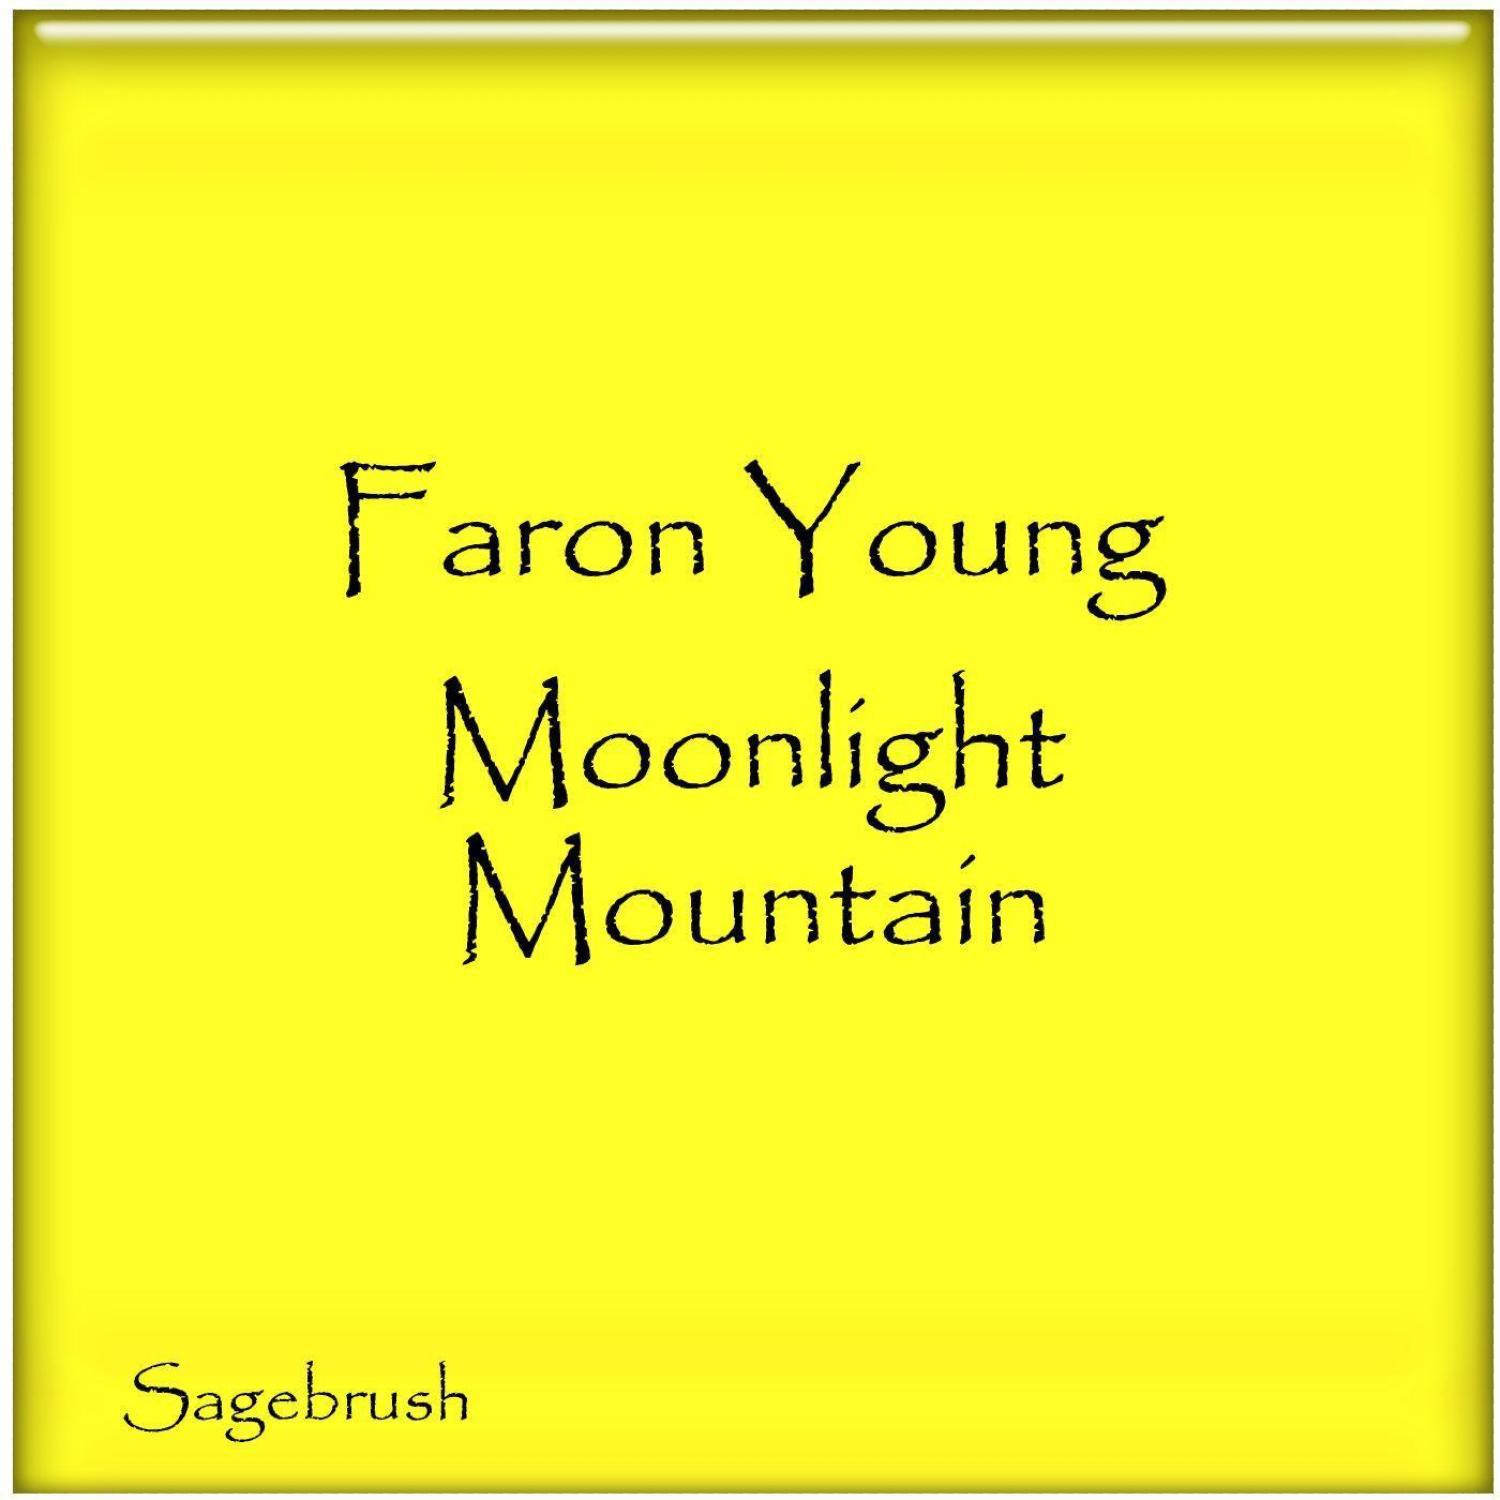 Moonlight Mountain